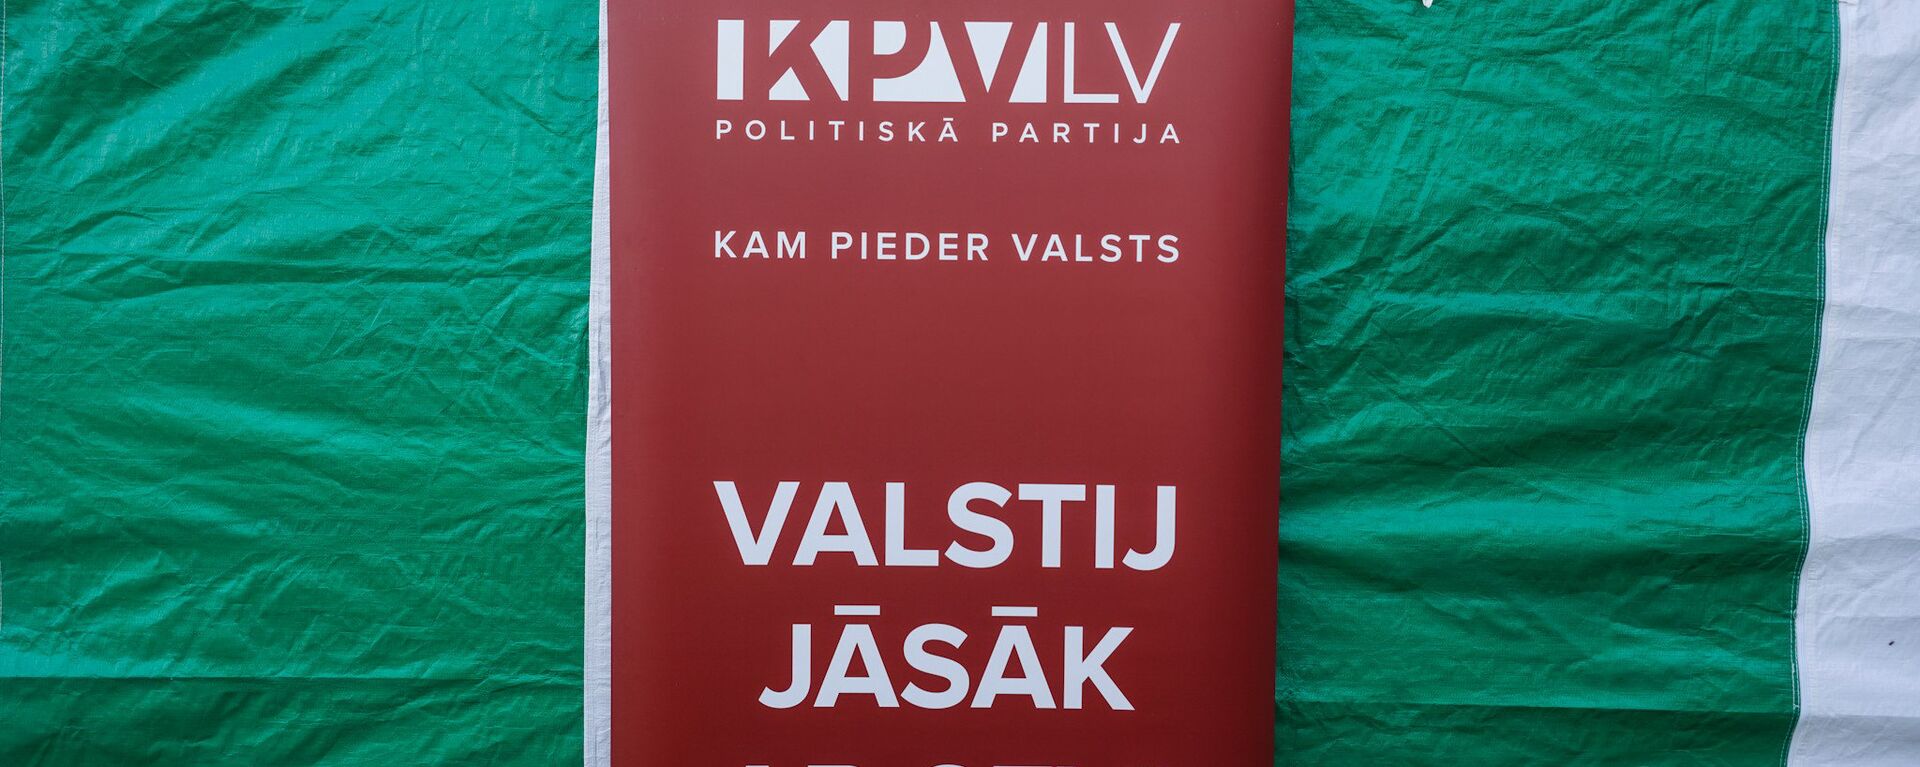 Политическая партия KPV LV - Sputnik Латвия, 1920, 07.04.2021